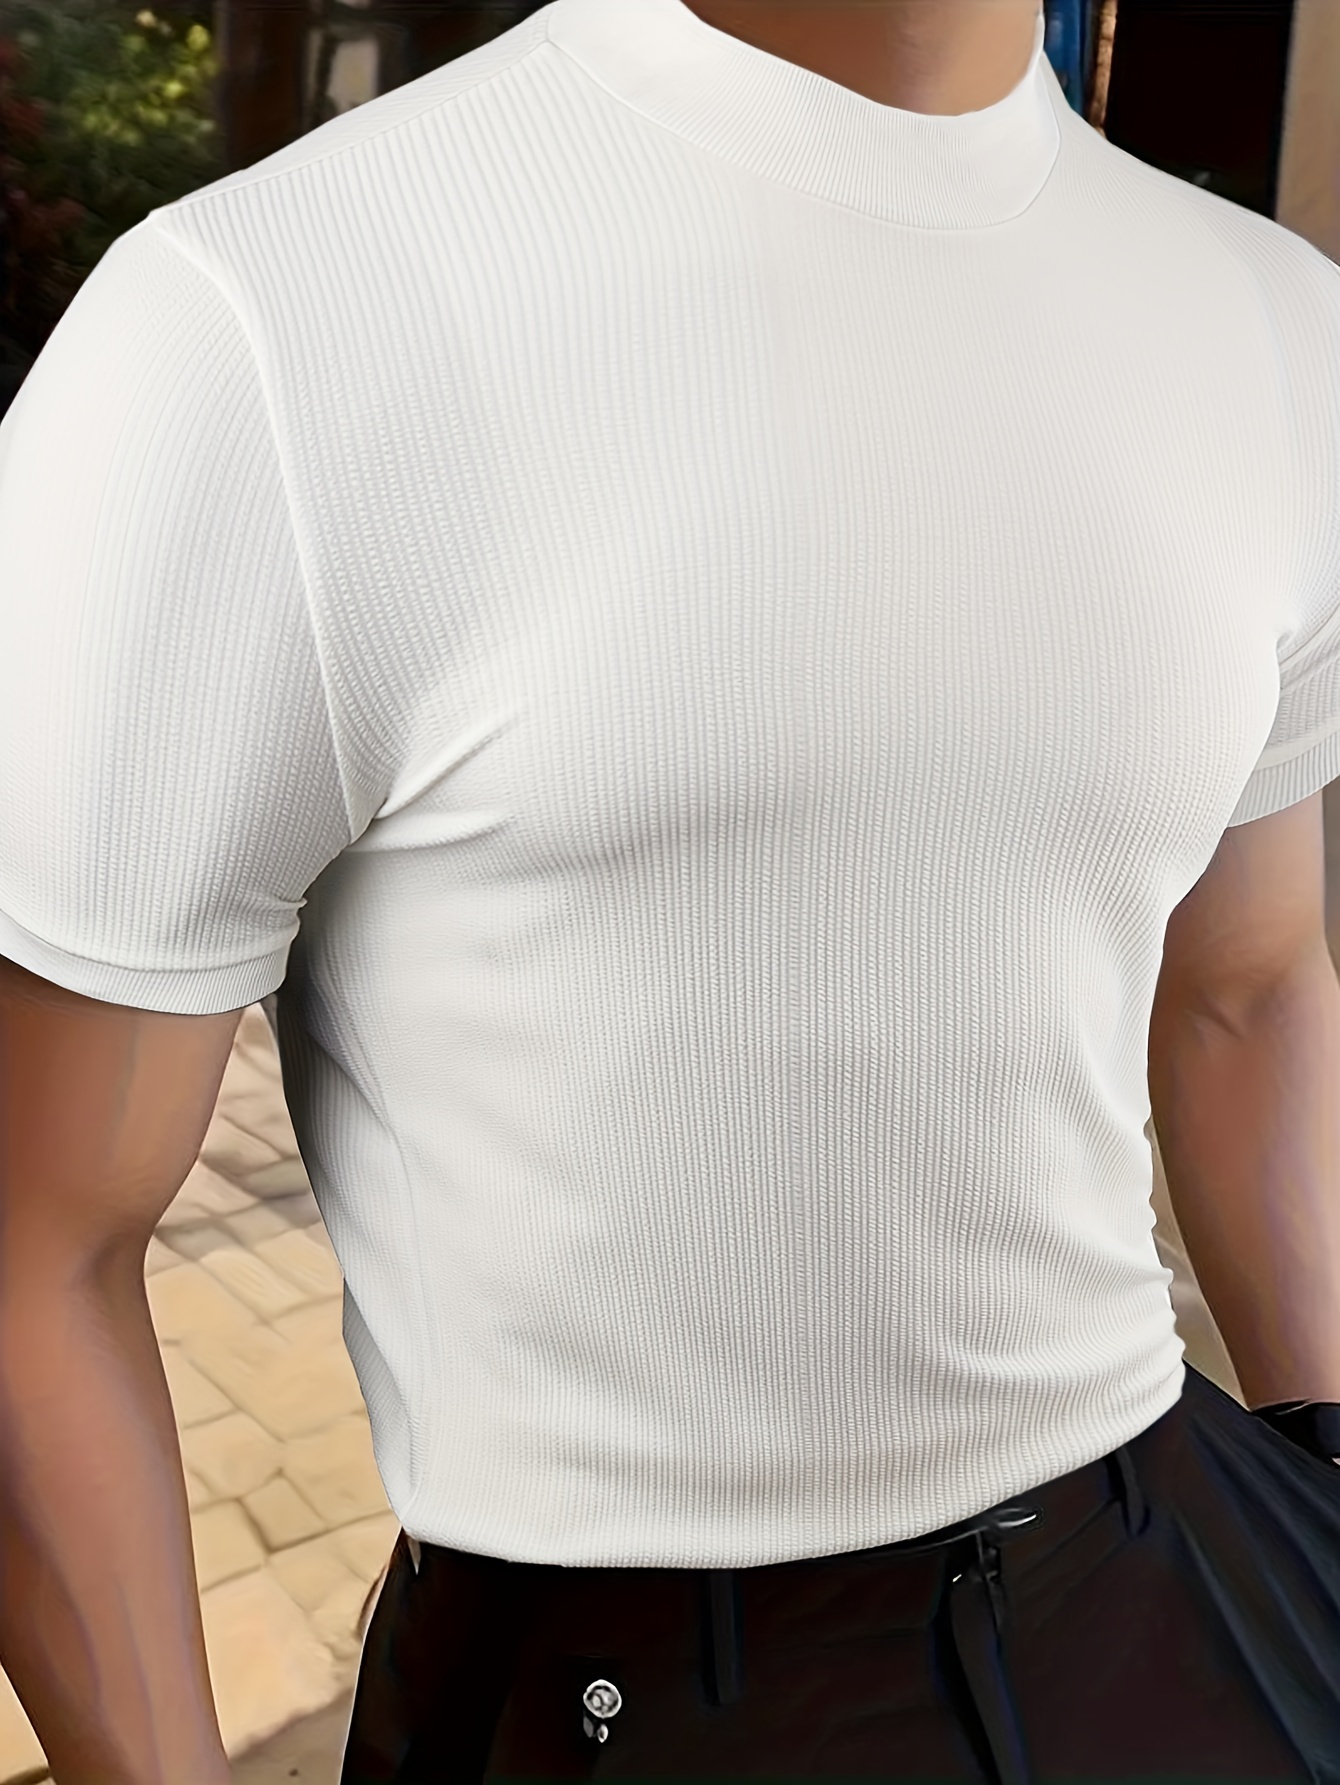 Camiseta de cuello alto falso para hombre, camiseta sólida de verano, blusa  de cuello alto, cuello alto, manga corta, camisa deportiva para hombre